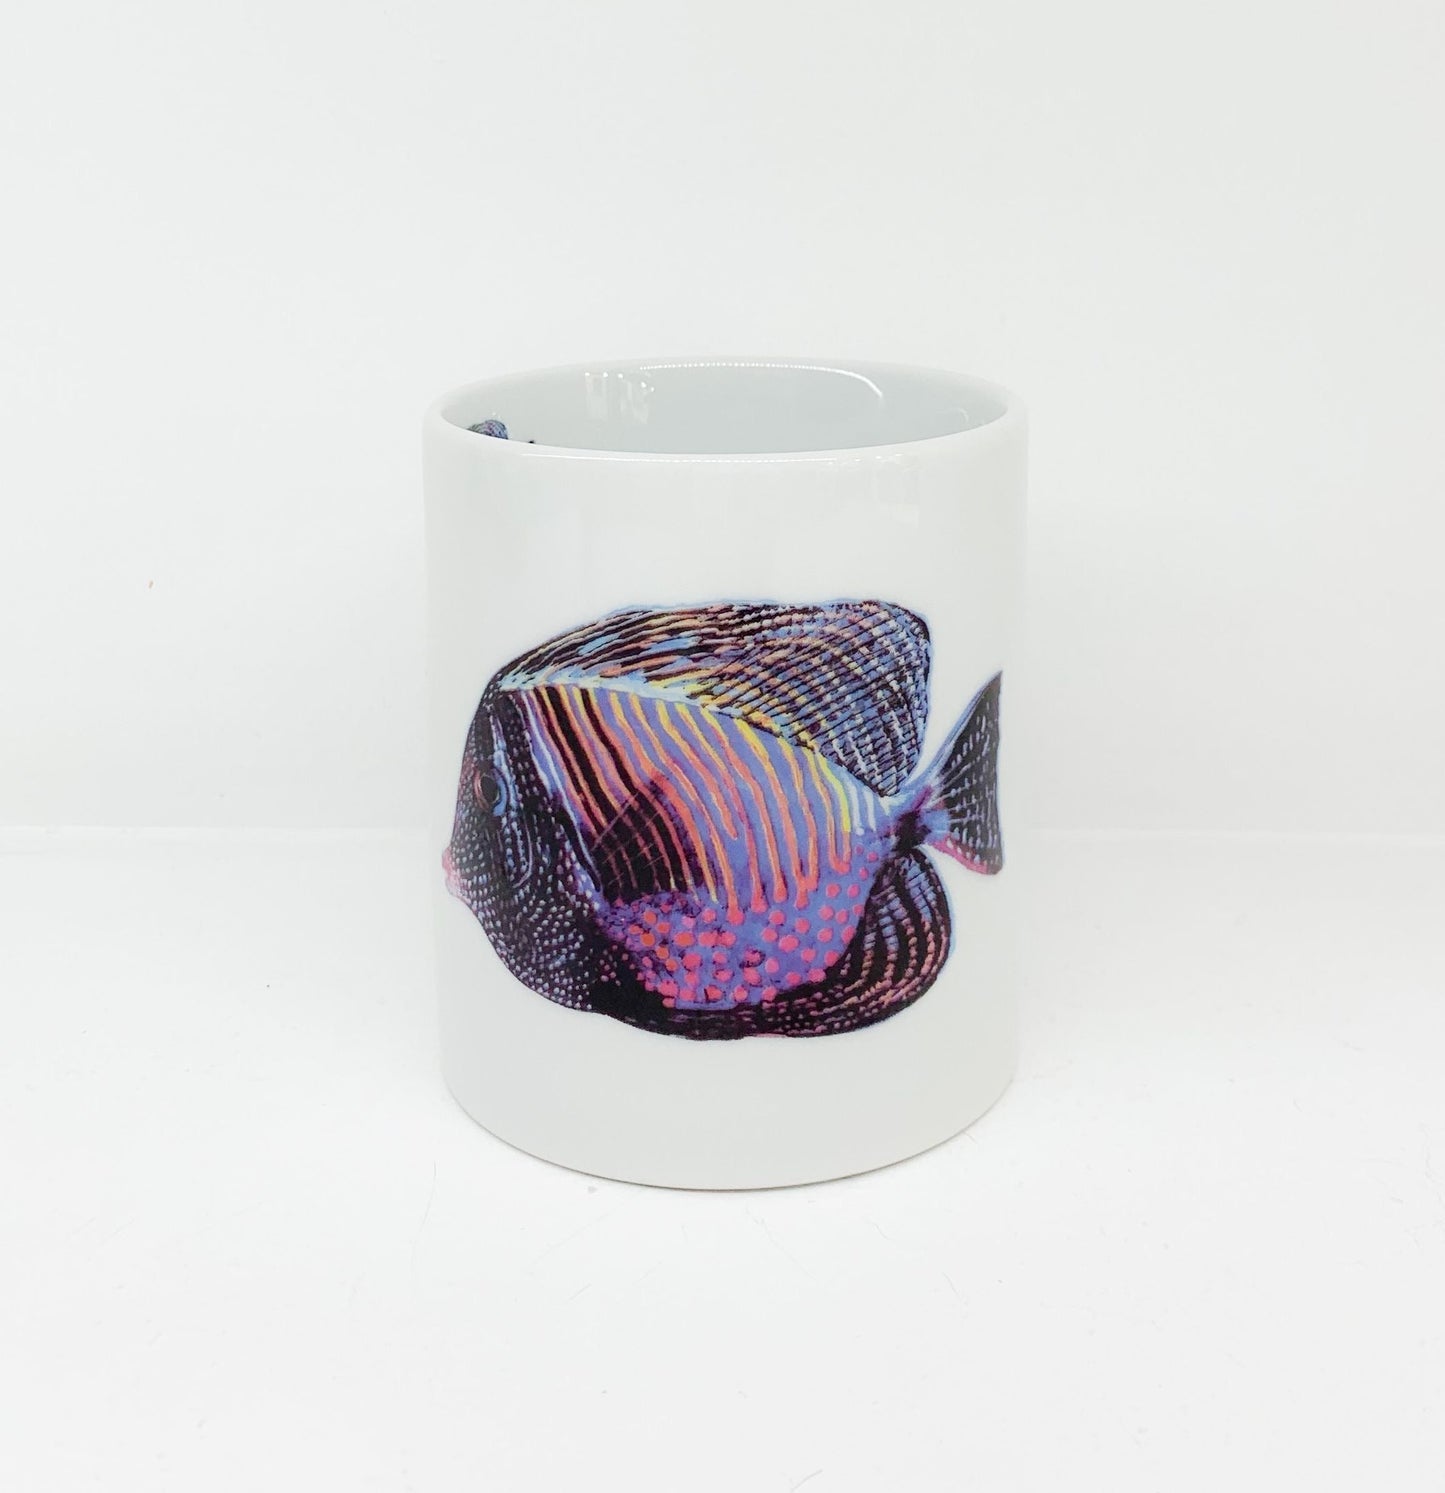 Κούπα ΚJi Fish collection design6